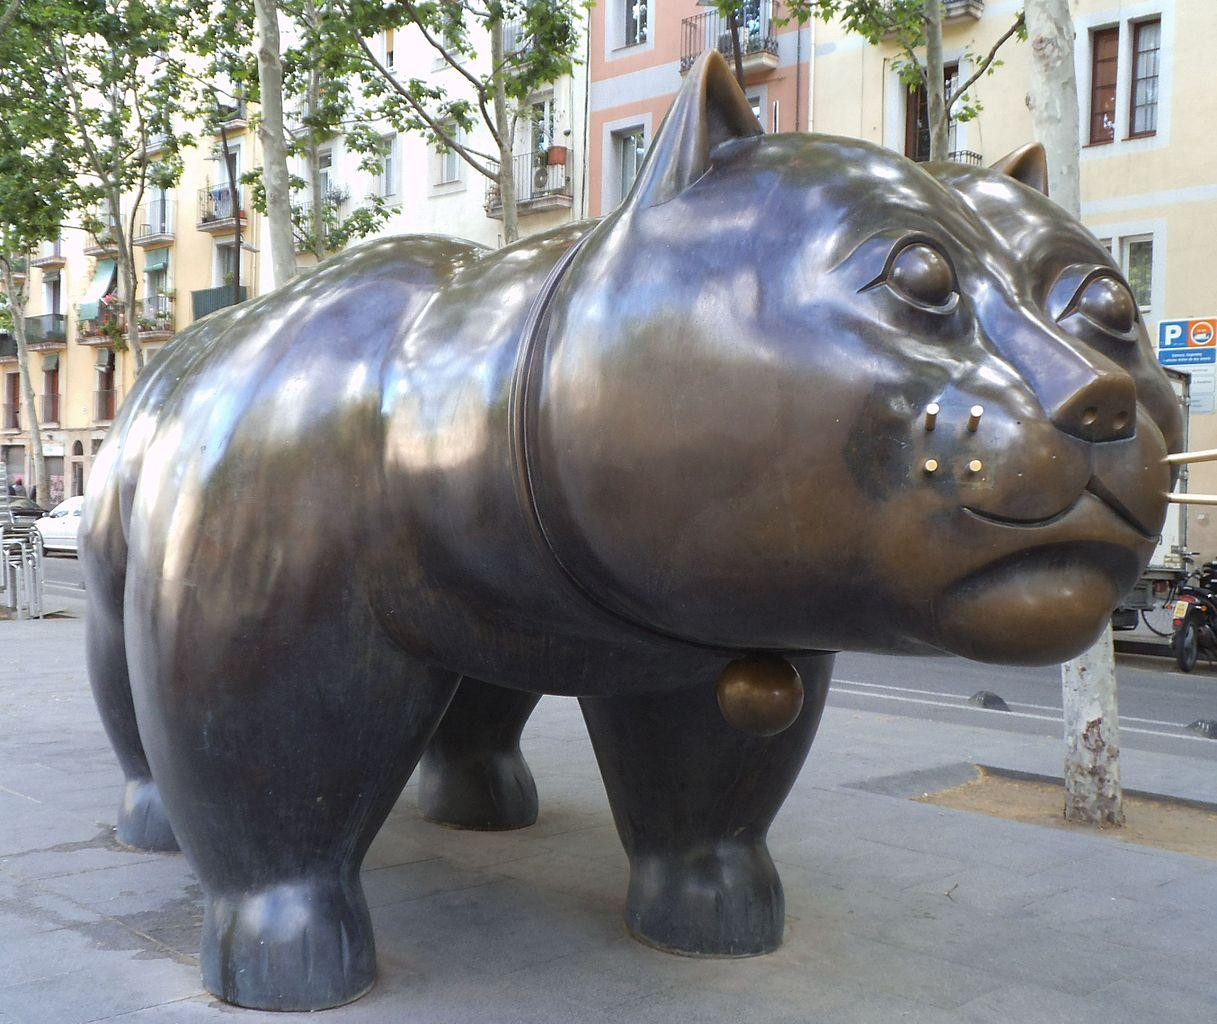 El gato del Raval es una de las esculturas de la ciudad de Barcelona / Camille Hardy - CREATIVE COMMONS